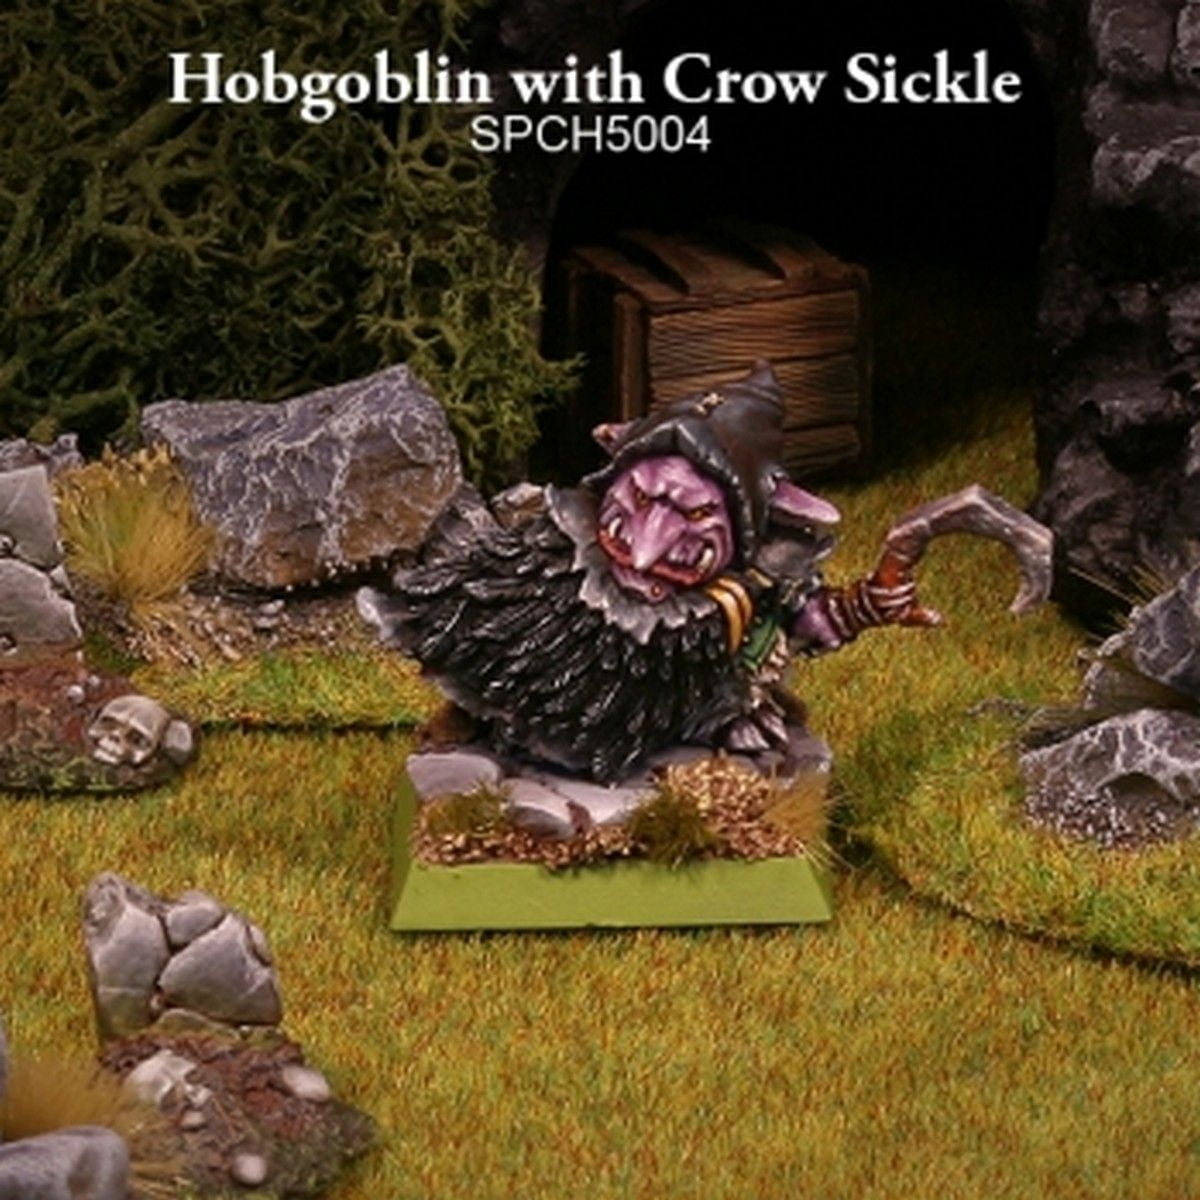 Hobgoblin with Crow Sickle